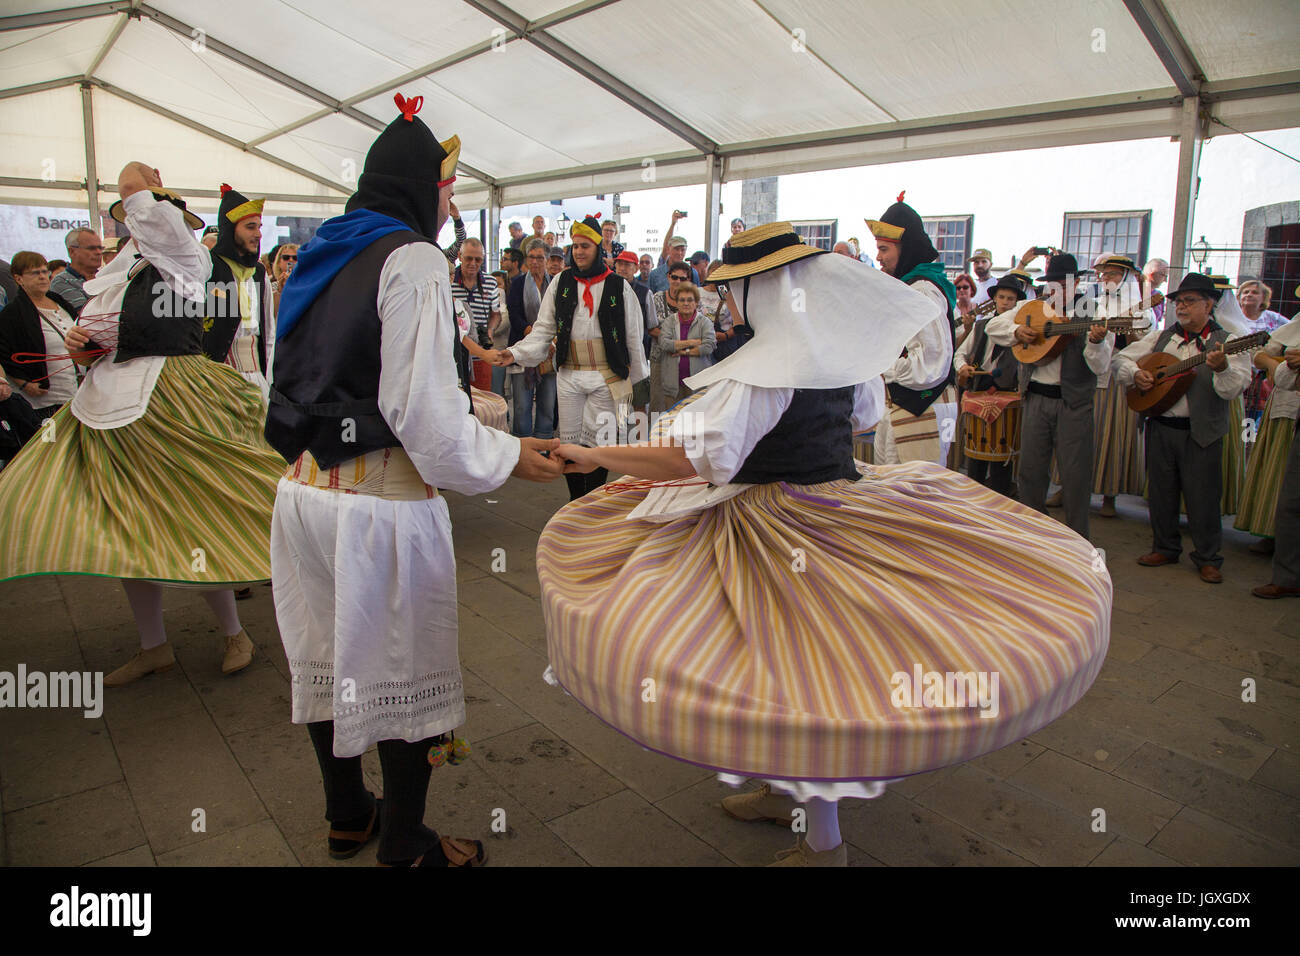 Tanzvorfuehrung, kanarische maenner und Frauen in traditioneller kleidung auf dem woechentlichen sonntagsmarkt in Teguise, Lanzarote, kanarische insel Foto Stock